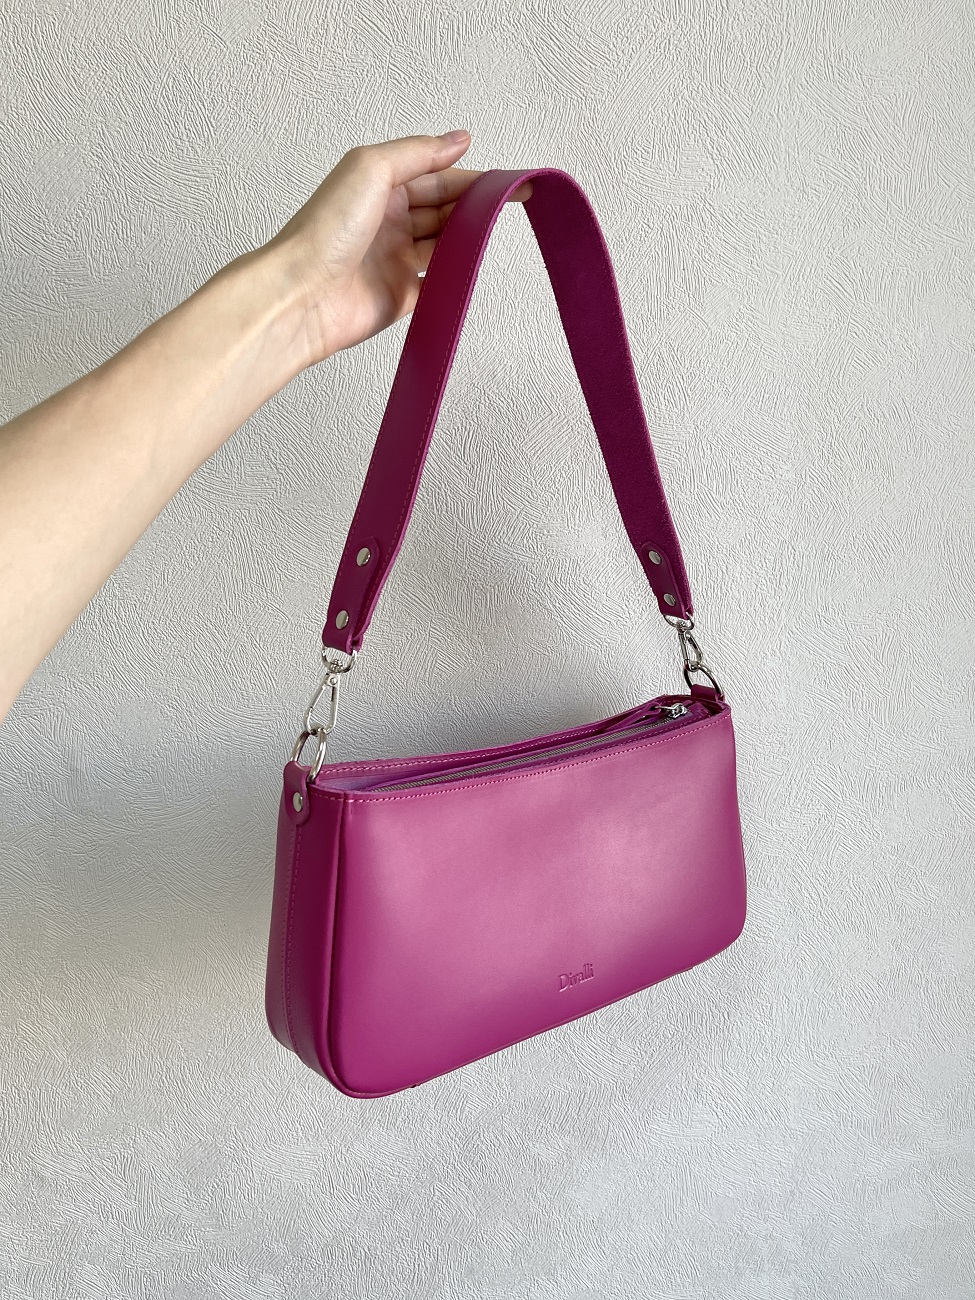 Женская сумка-багет из натуральной кожи розовая A041 fuchsia